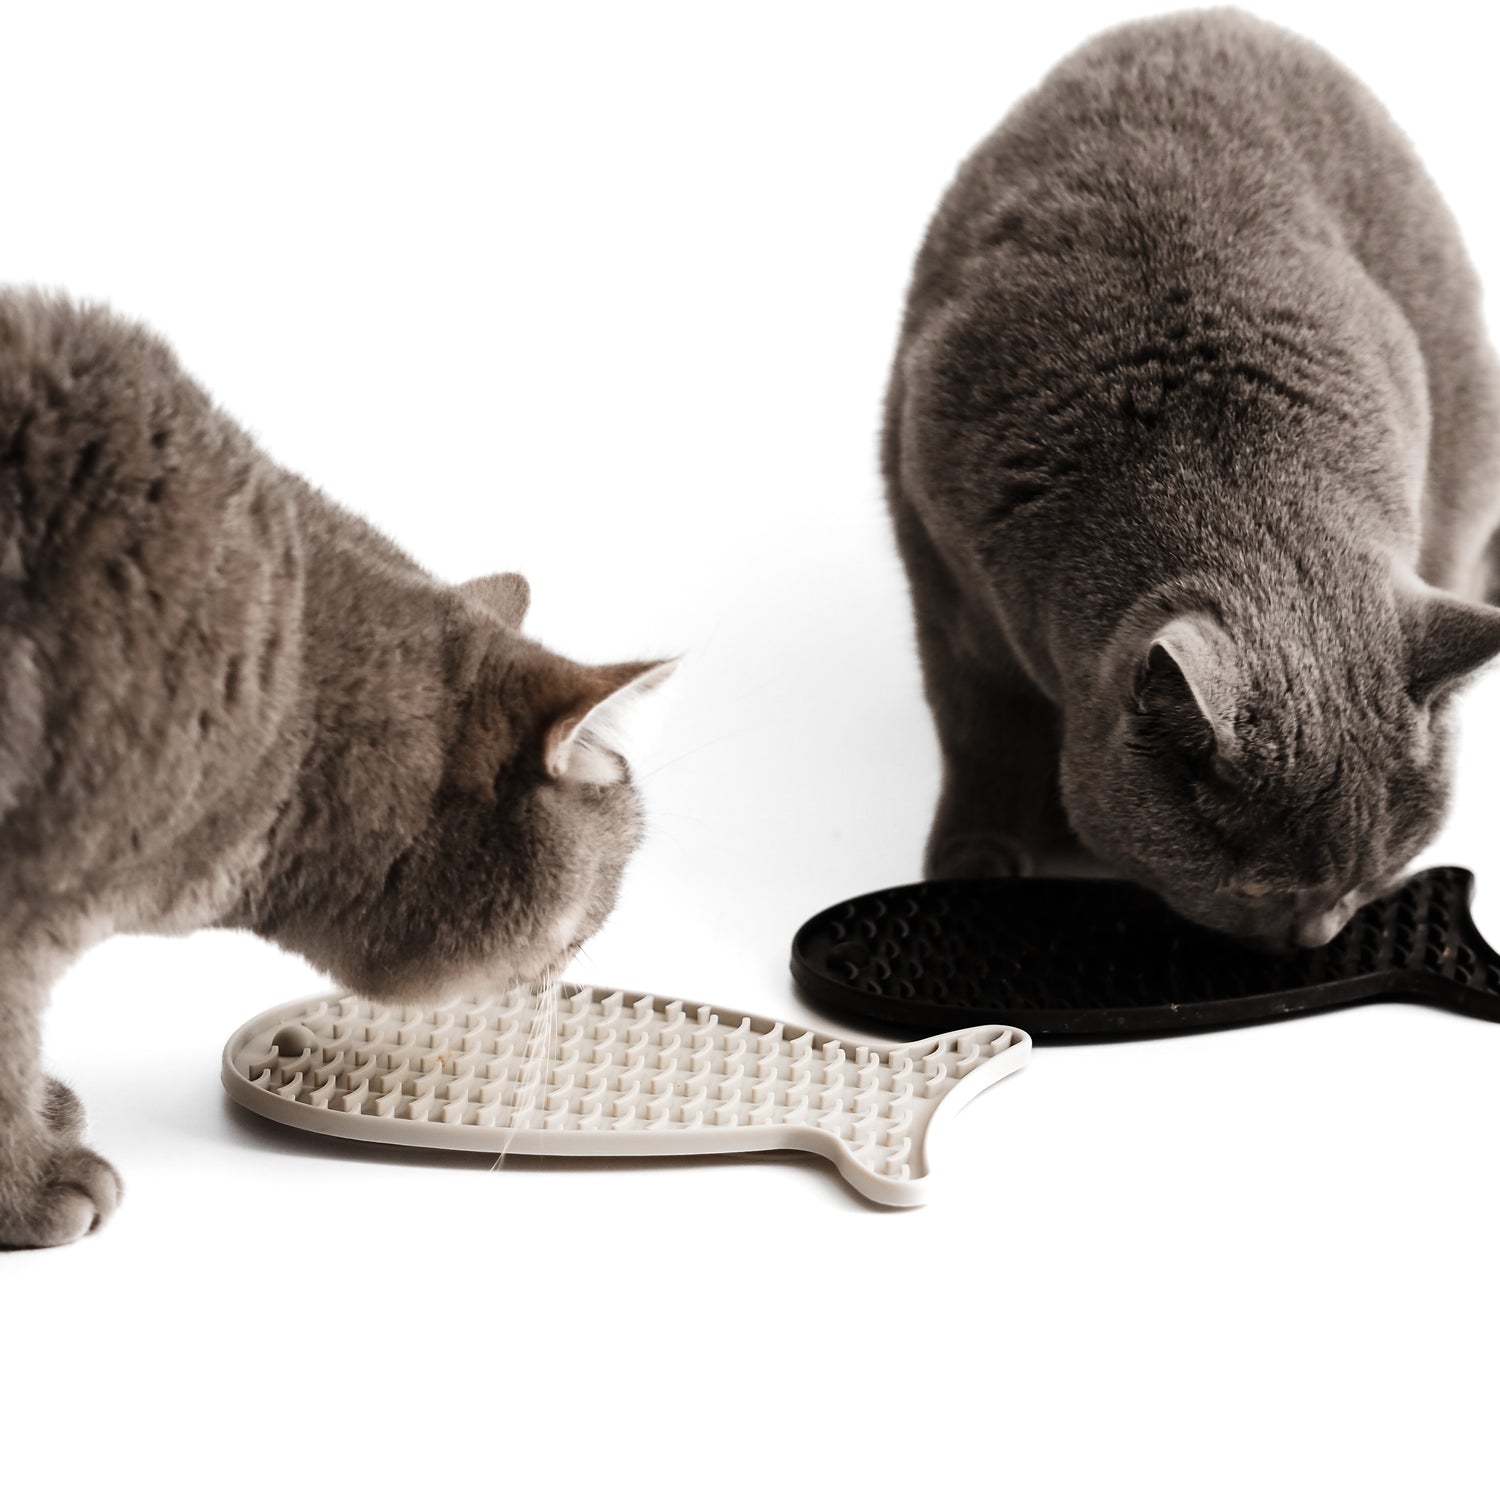 Schleckmatten zur Beschäftigung von Katzen mit Katzenfutter, Leckerlies oder Pasten für Katzen..